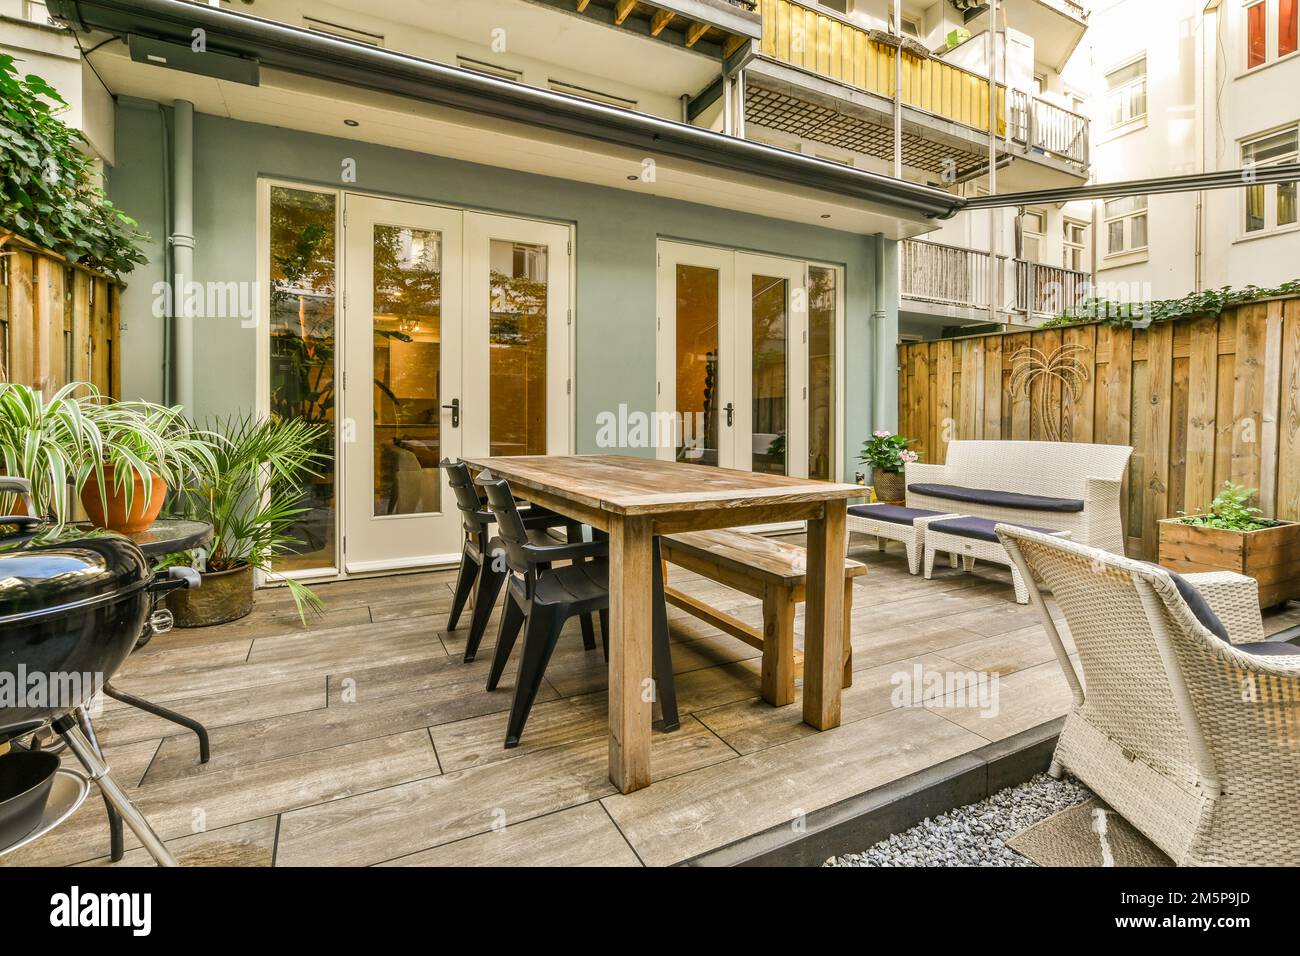 Eine Terrasse mit Stühlen, Tischen und einem Essbereich im Freien auf dem Boden vor einer Tür ist offen Stockfoto